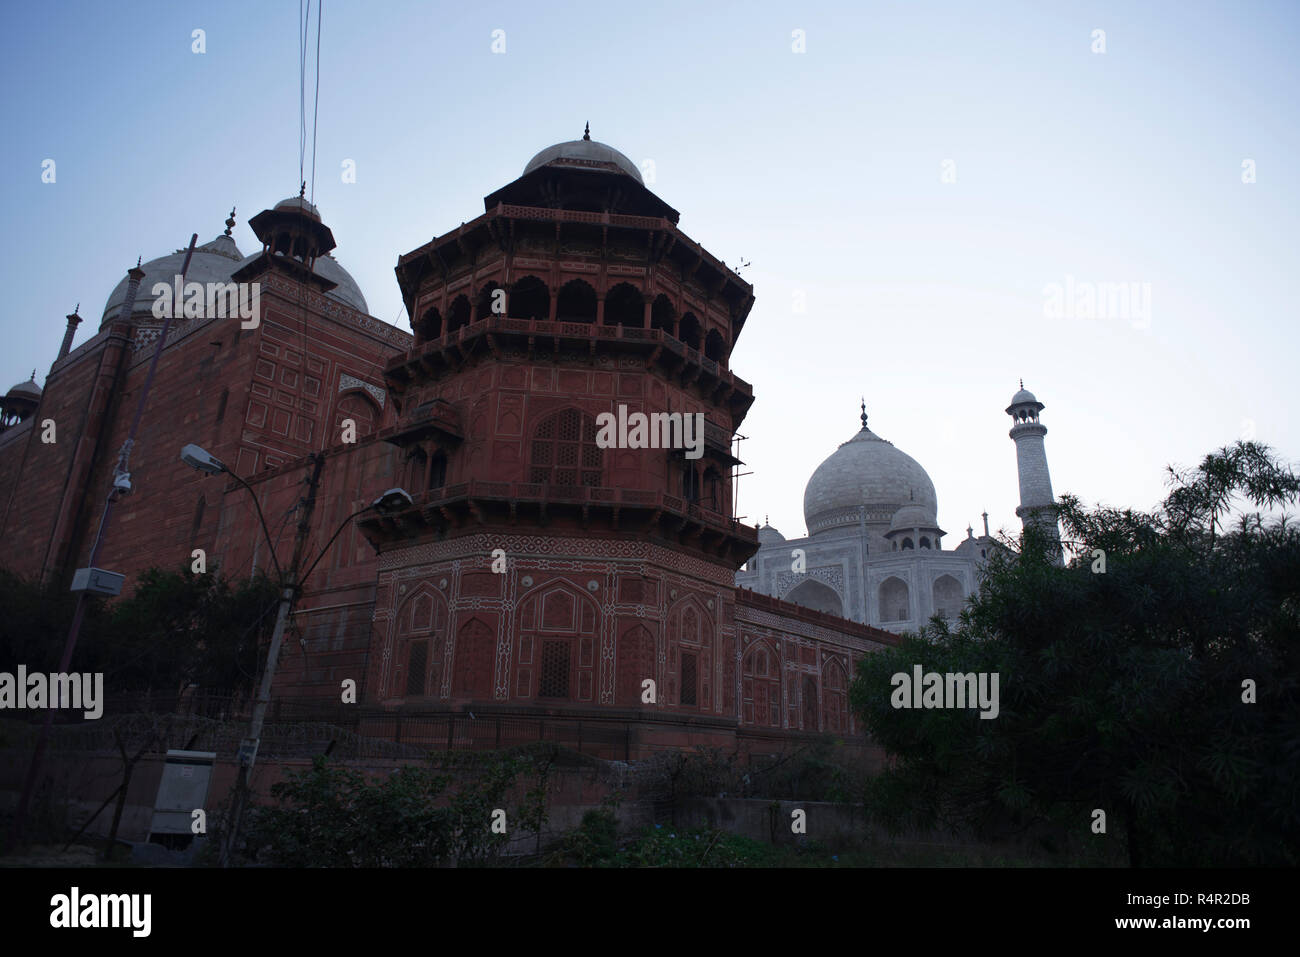 Taj Mahal die Wunder der Welt und der Stolz von Indien mit seinen wichtigsten Grab und einer kleinen Kuppel mit einem Minarett befestigte mit einem hohen roten Wänden mit Kreisbögen Stockfoto